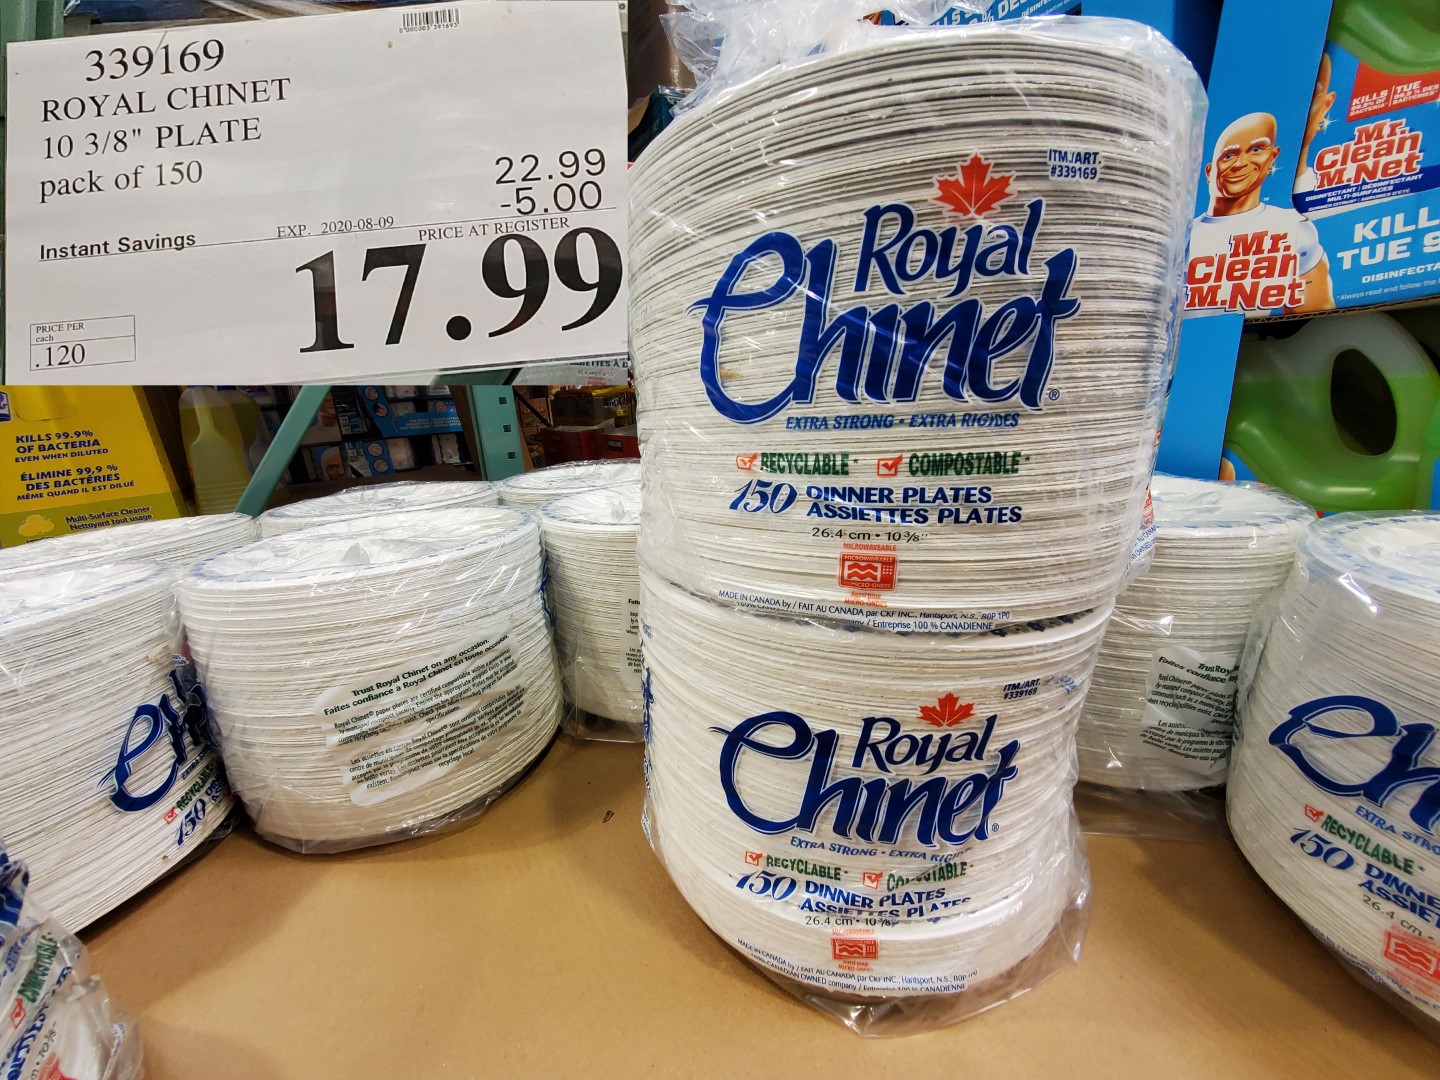 royal chinet paper plates